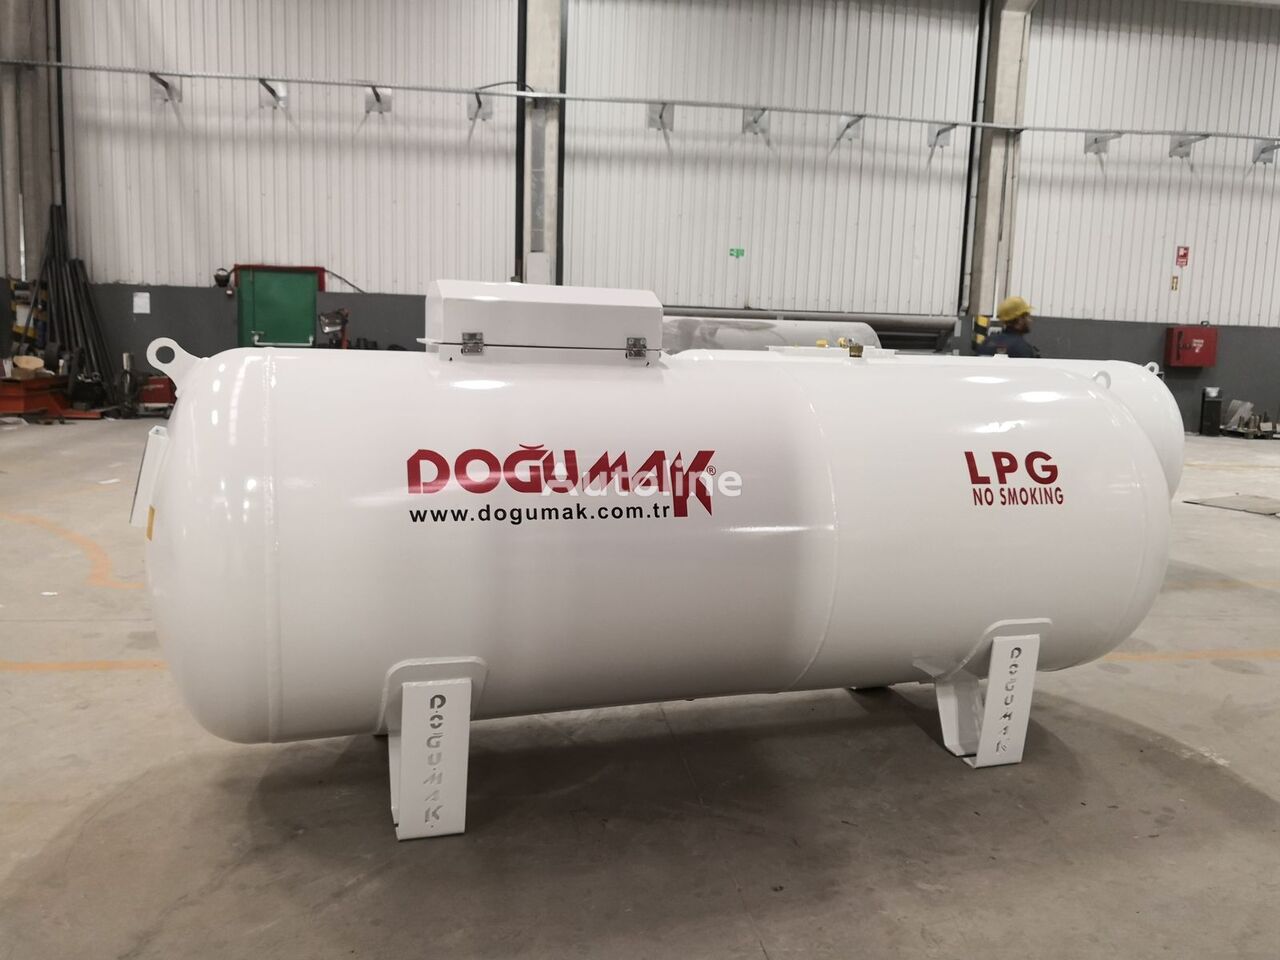 new Doğumak ABOVE GROUND LPG STORAGE TANKS gas tank trailer